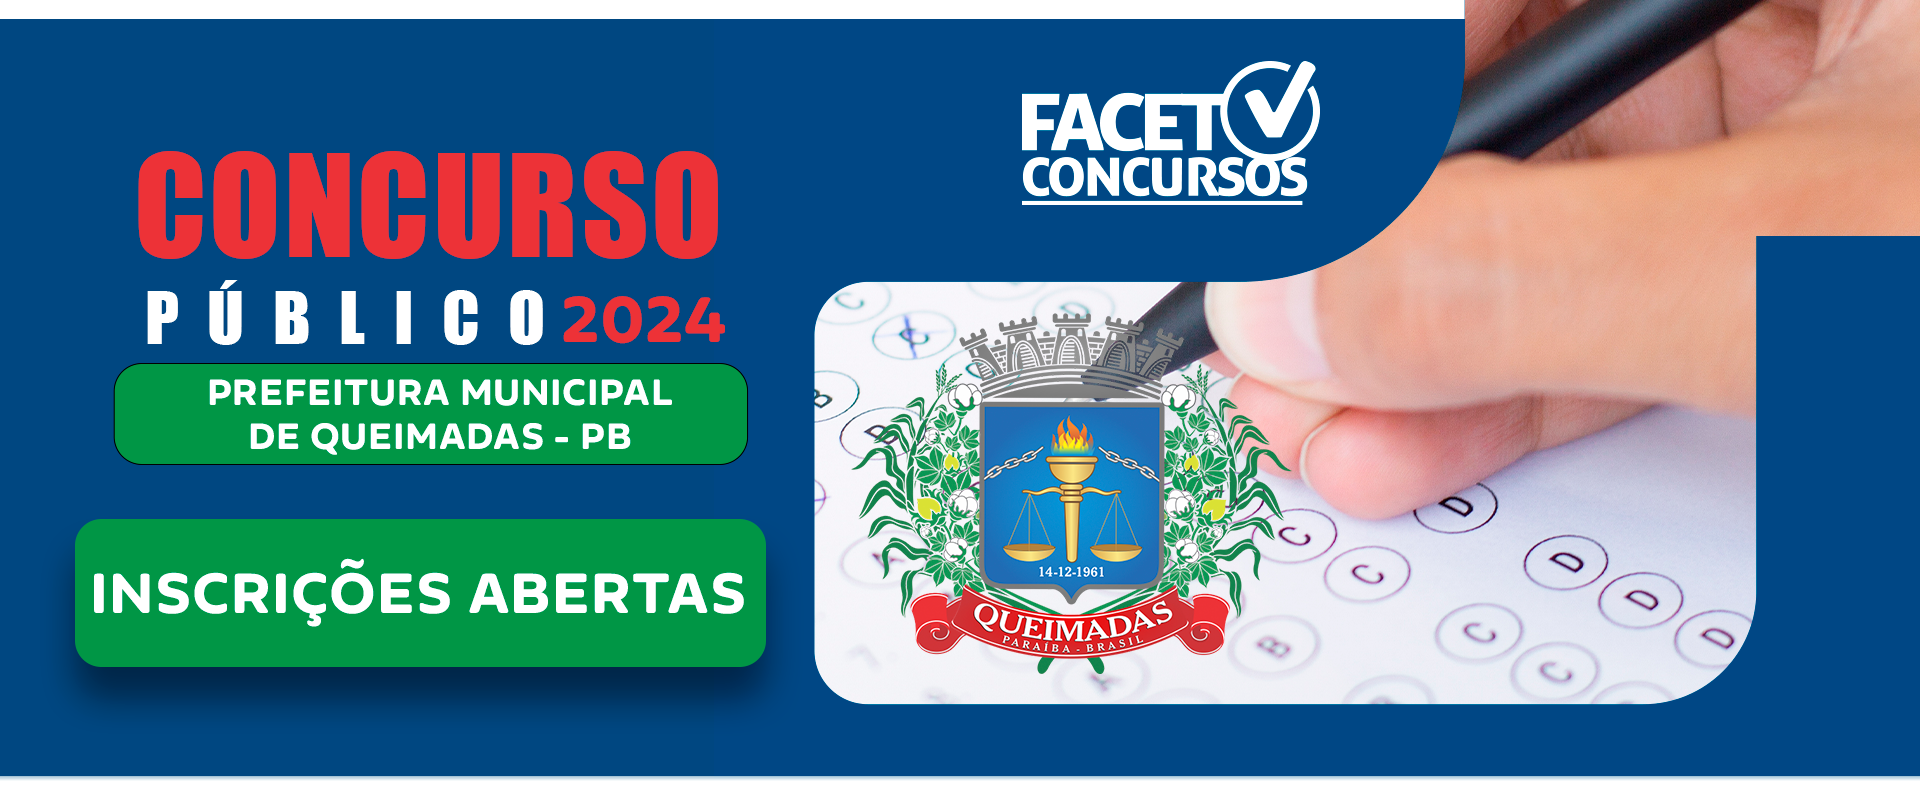 Concurso Público Prefeitura Municipal Queimadas – PB